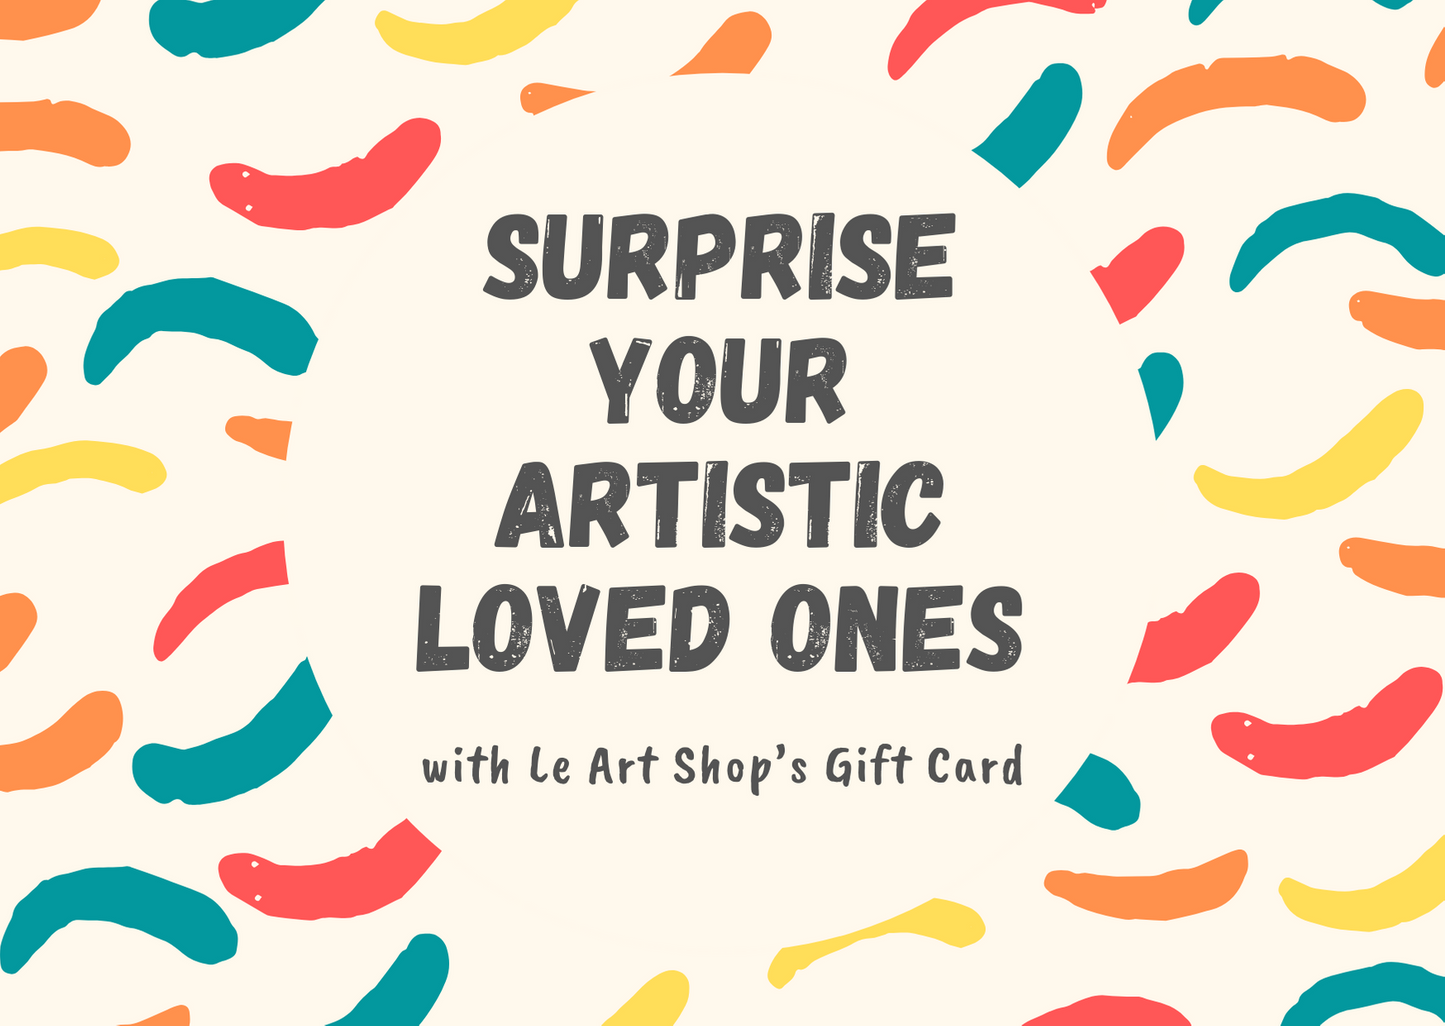 Le Art Shop RM200 Gift Card